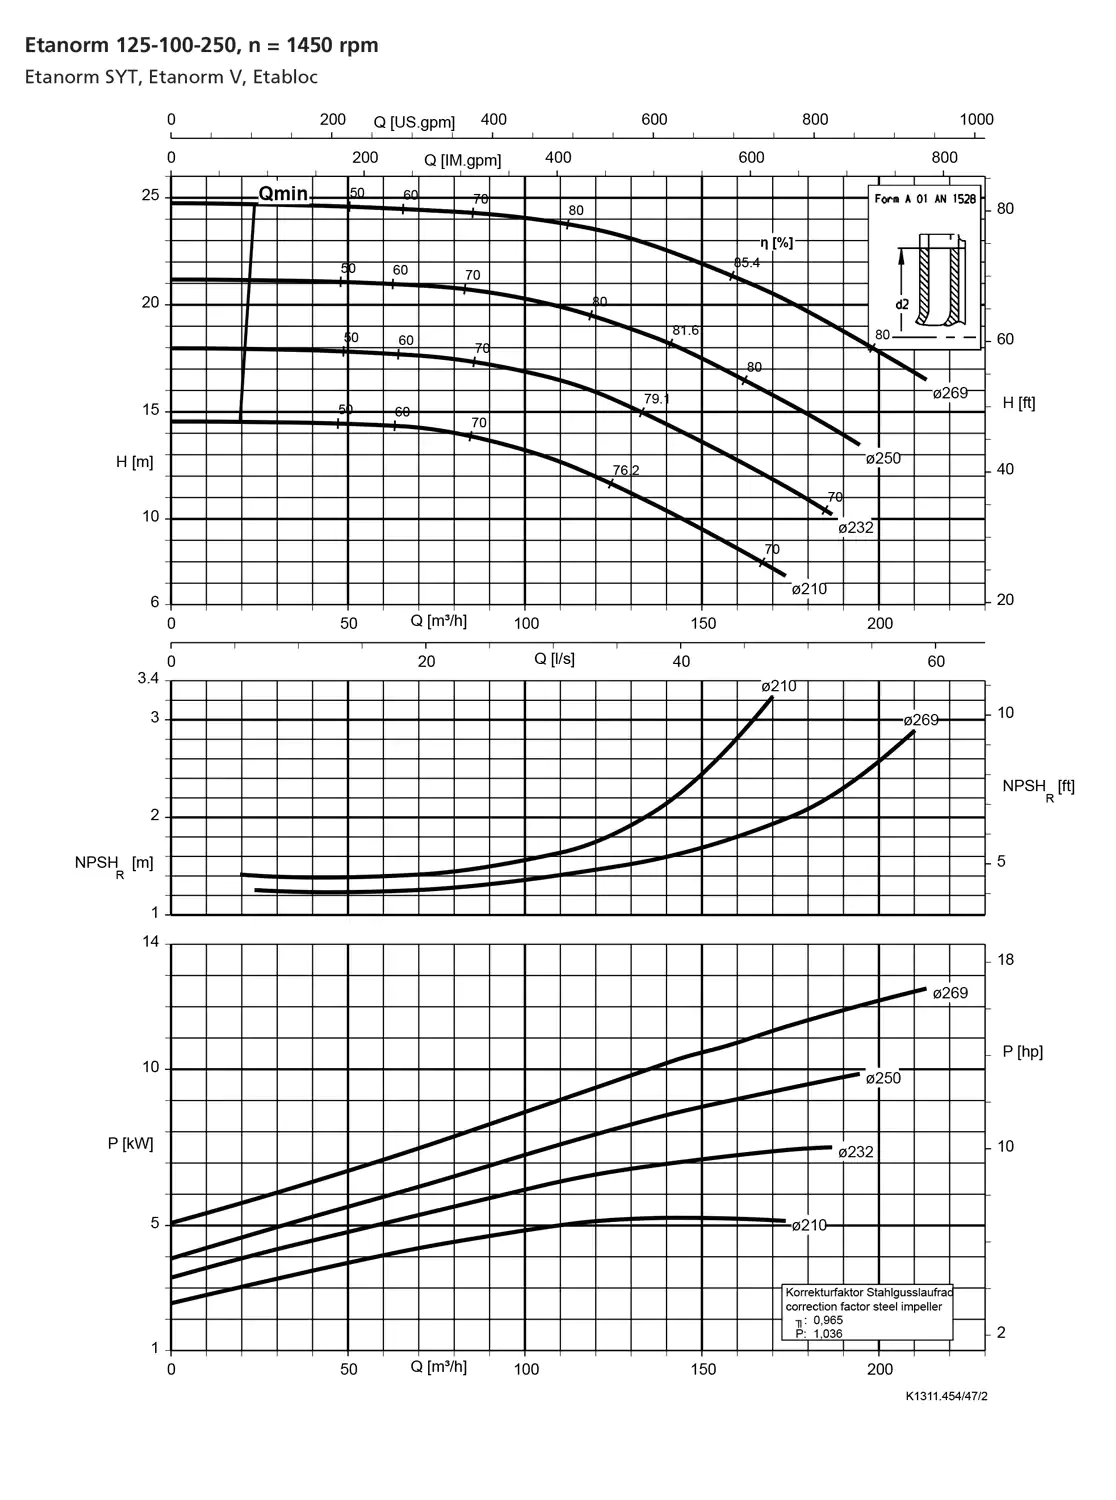 نمودار-کارکرد-پمپ-etanorm-syt-125-100-250-1450